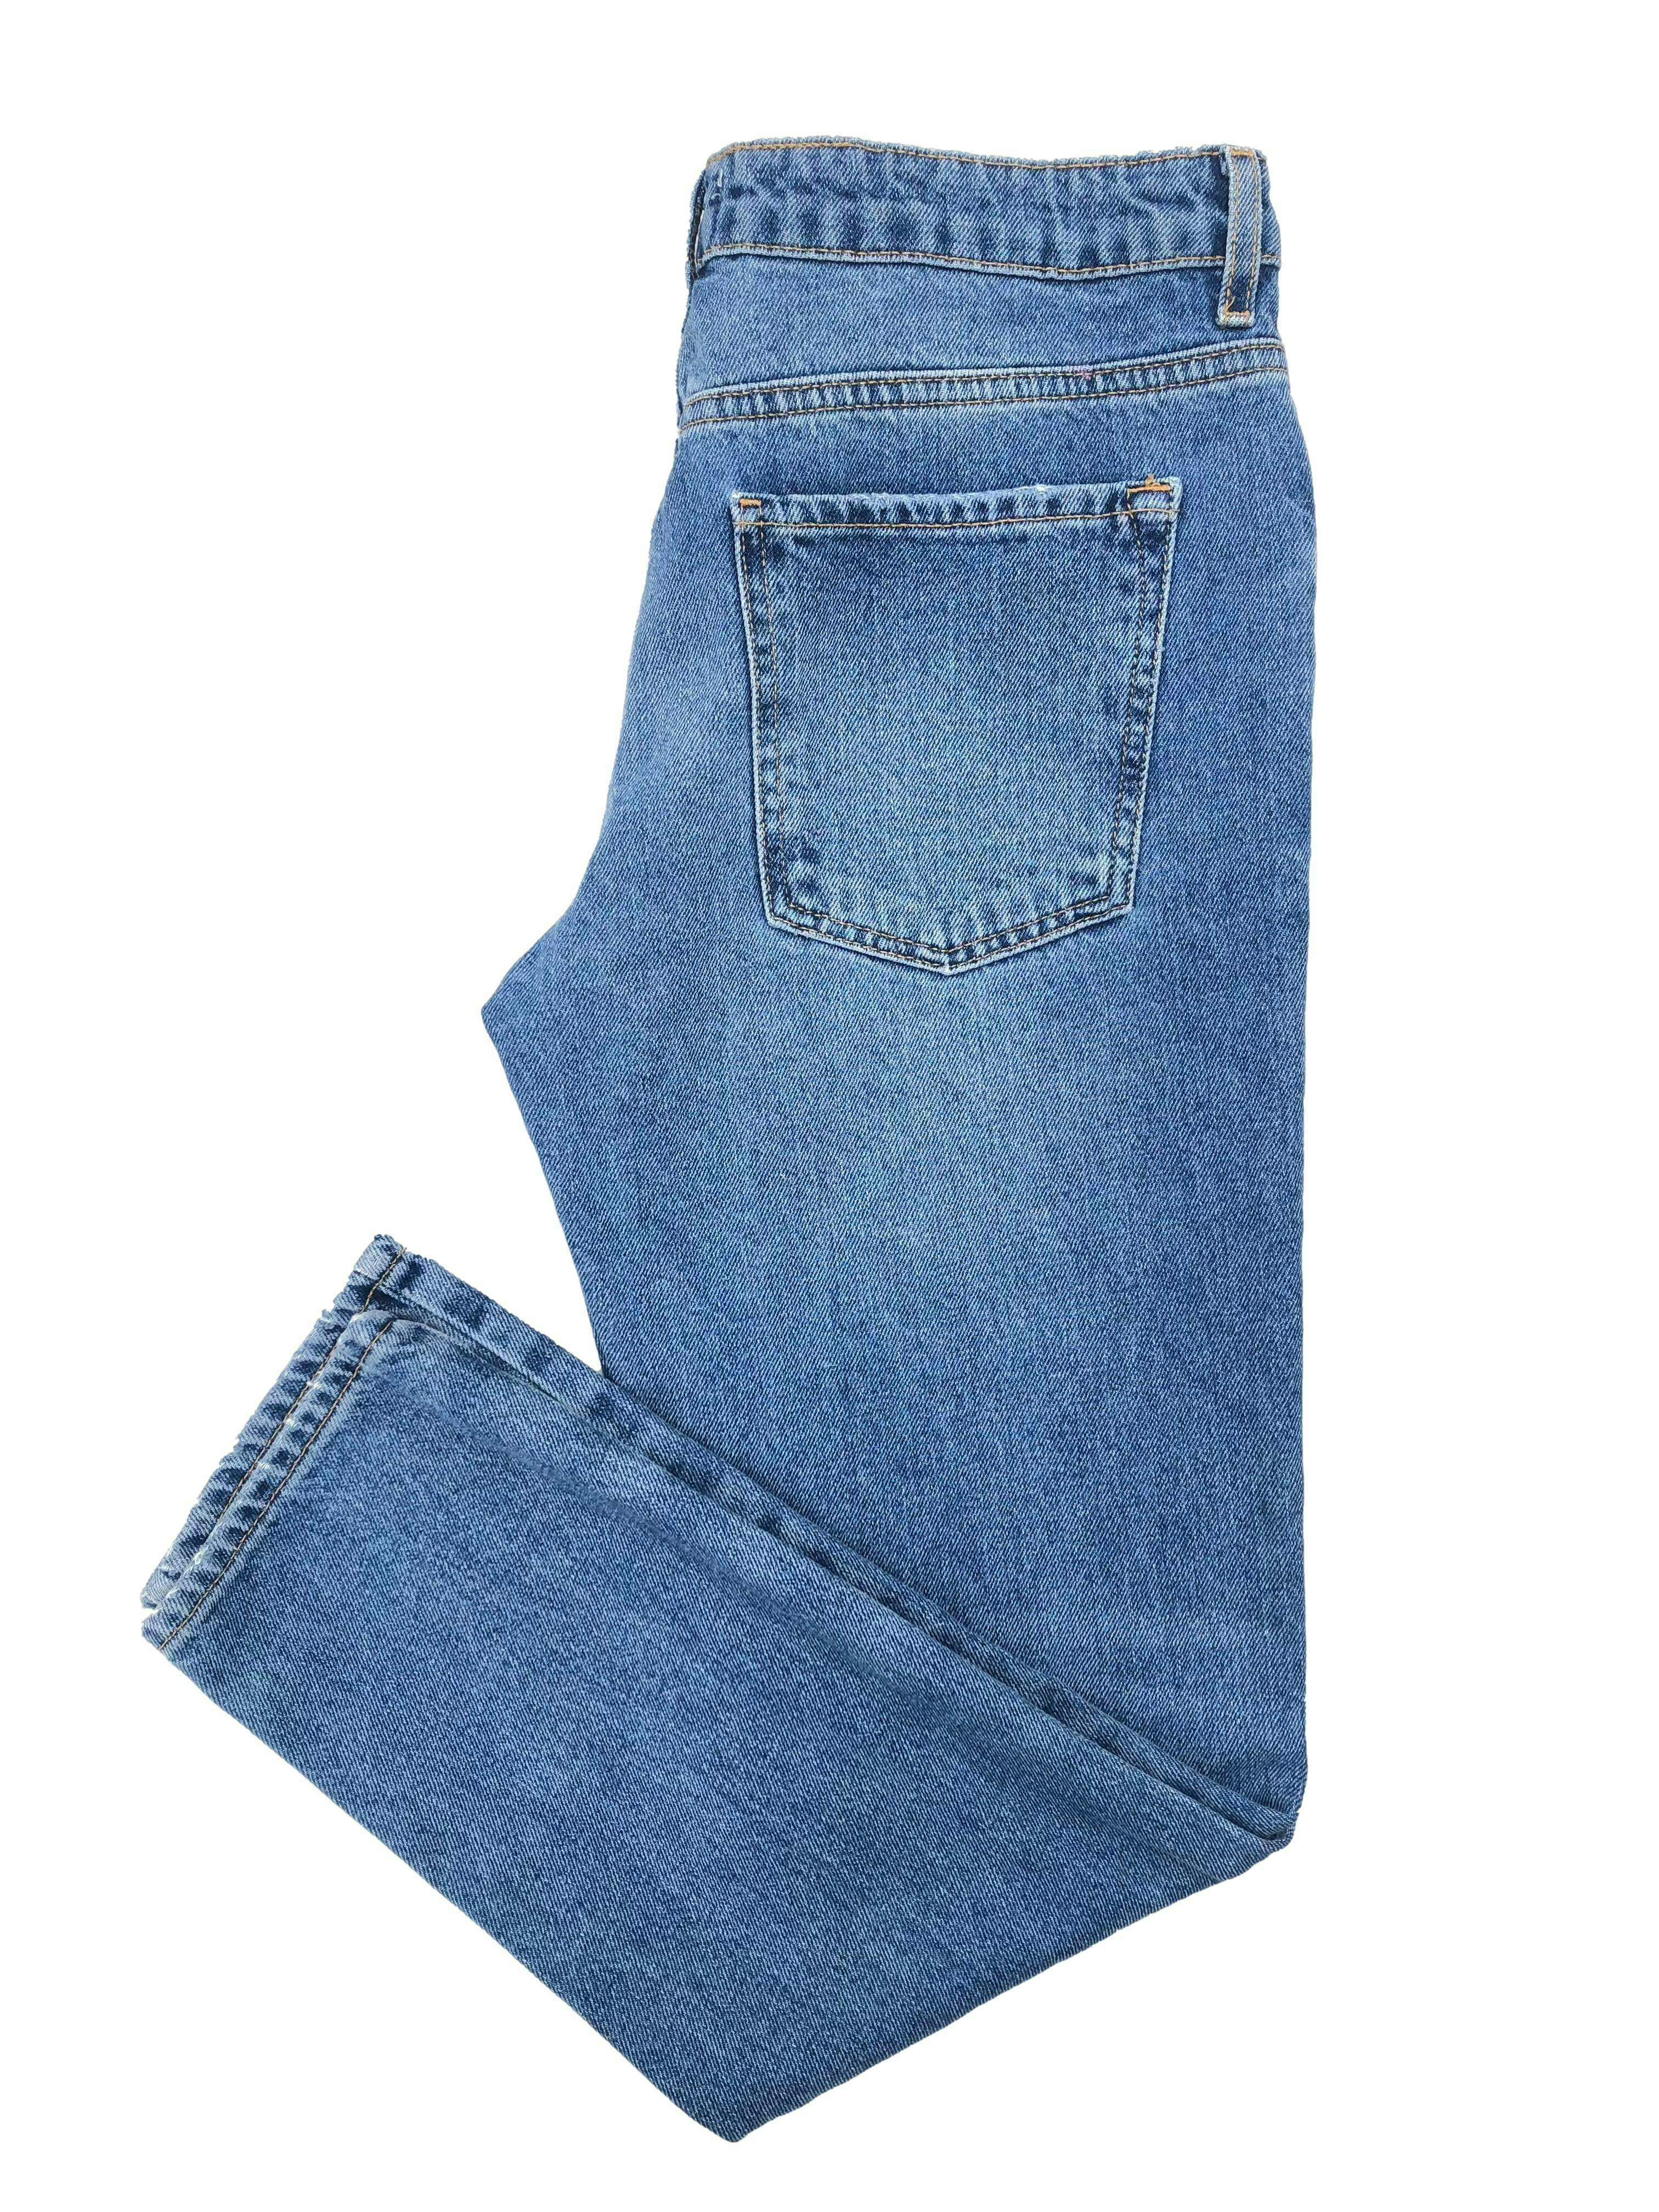 Destroyed jeans Forever21, denim rígido, cinco bolsillos. Cintura 74cm Tiro 25cm Largo 90cm